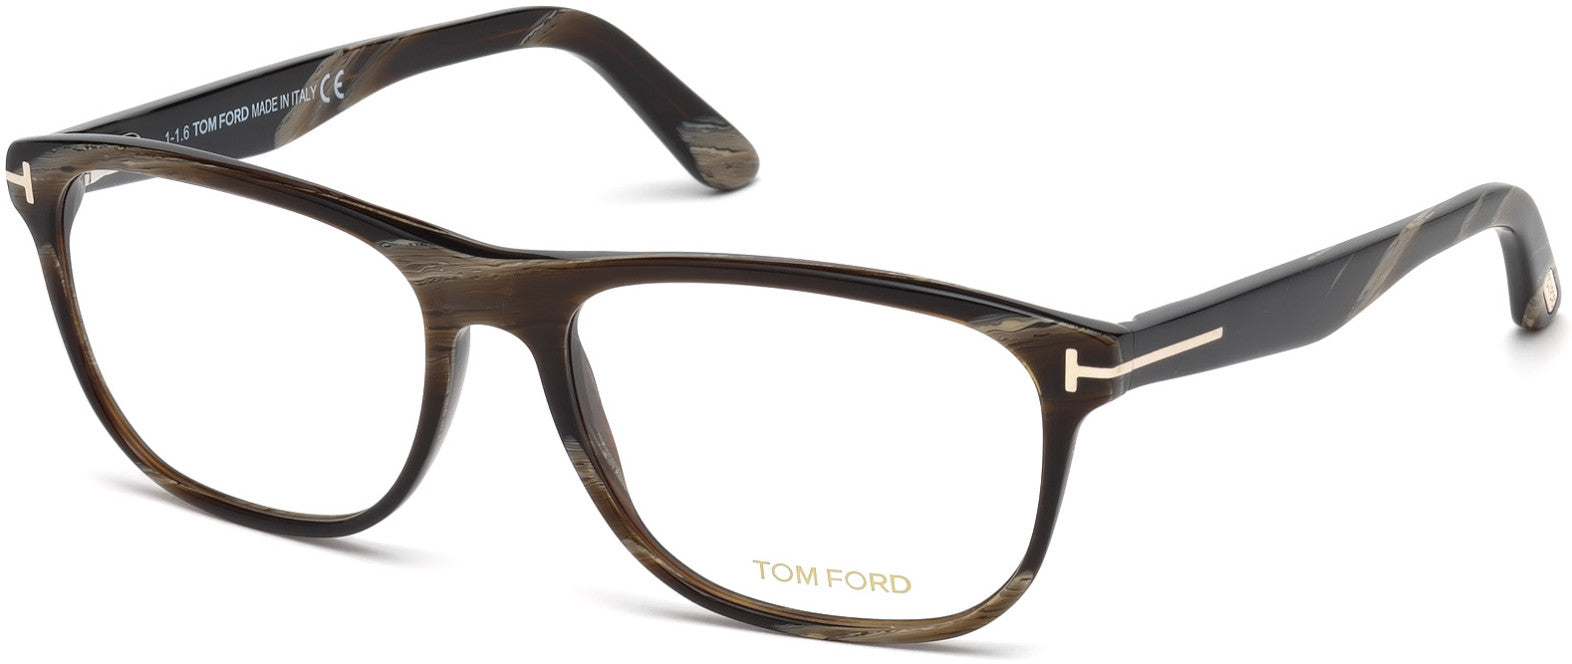 Tom Ford FT5430 Geometric Eyeglasses 062-062 - Brown Horn